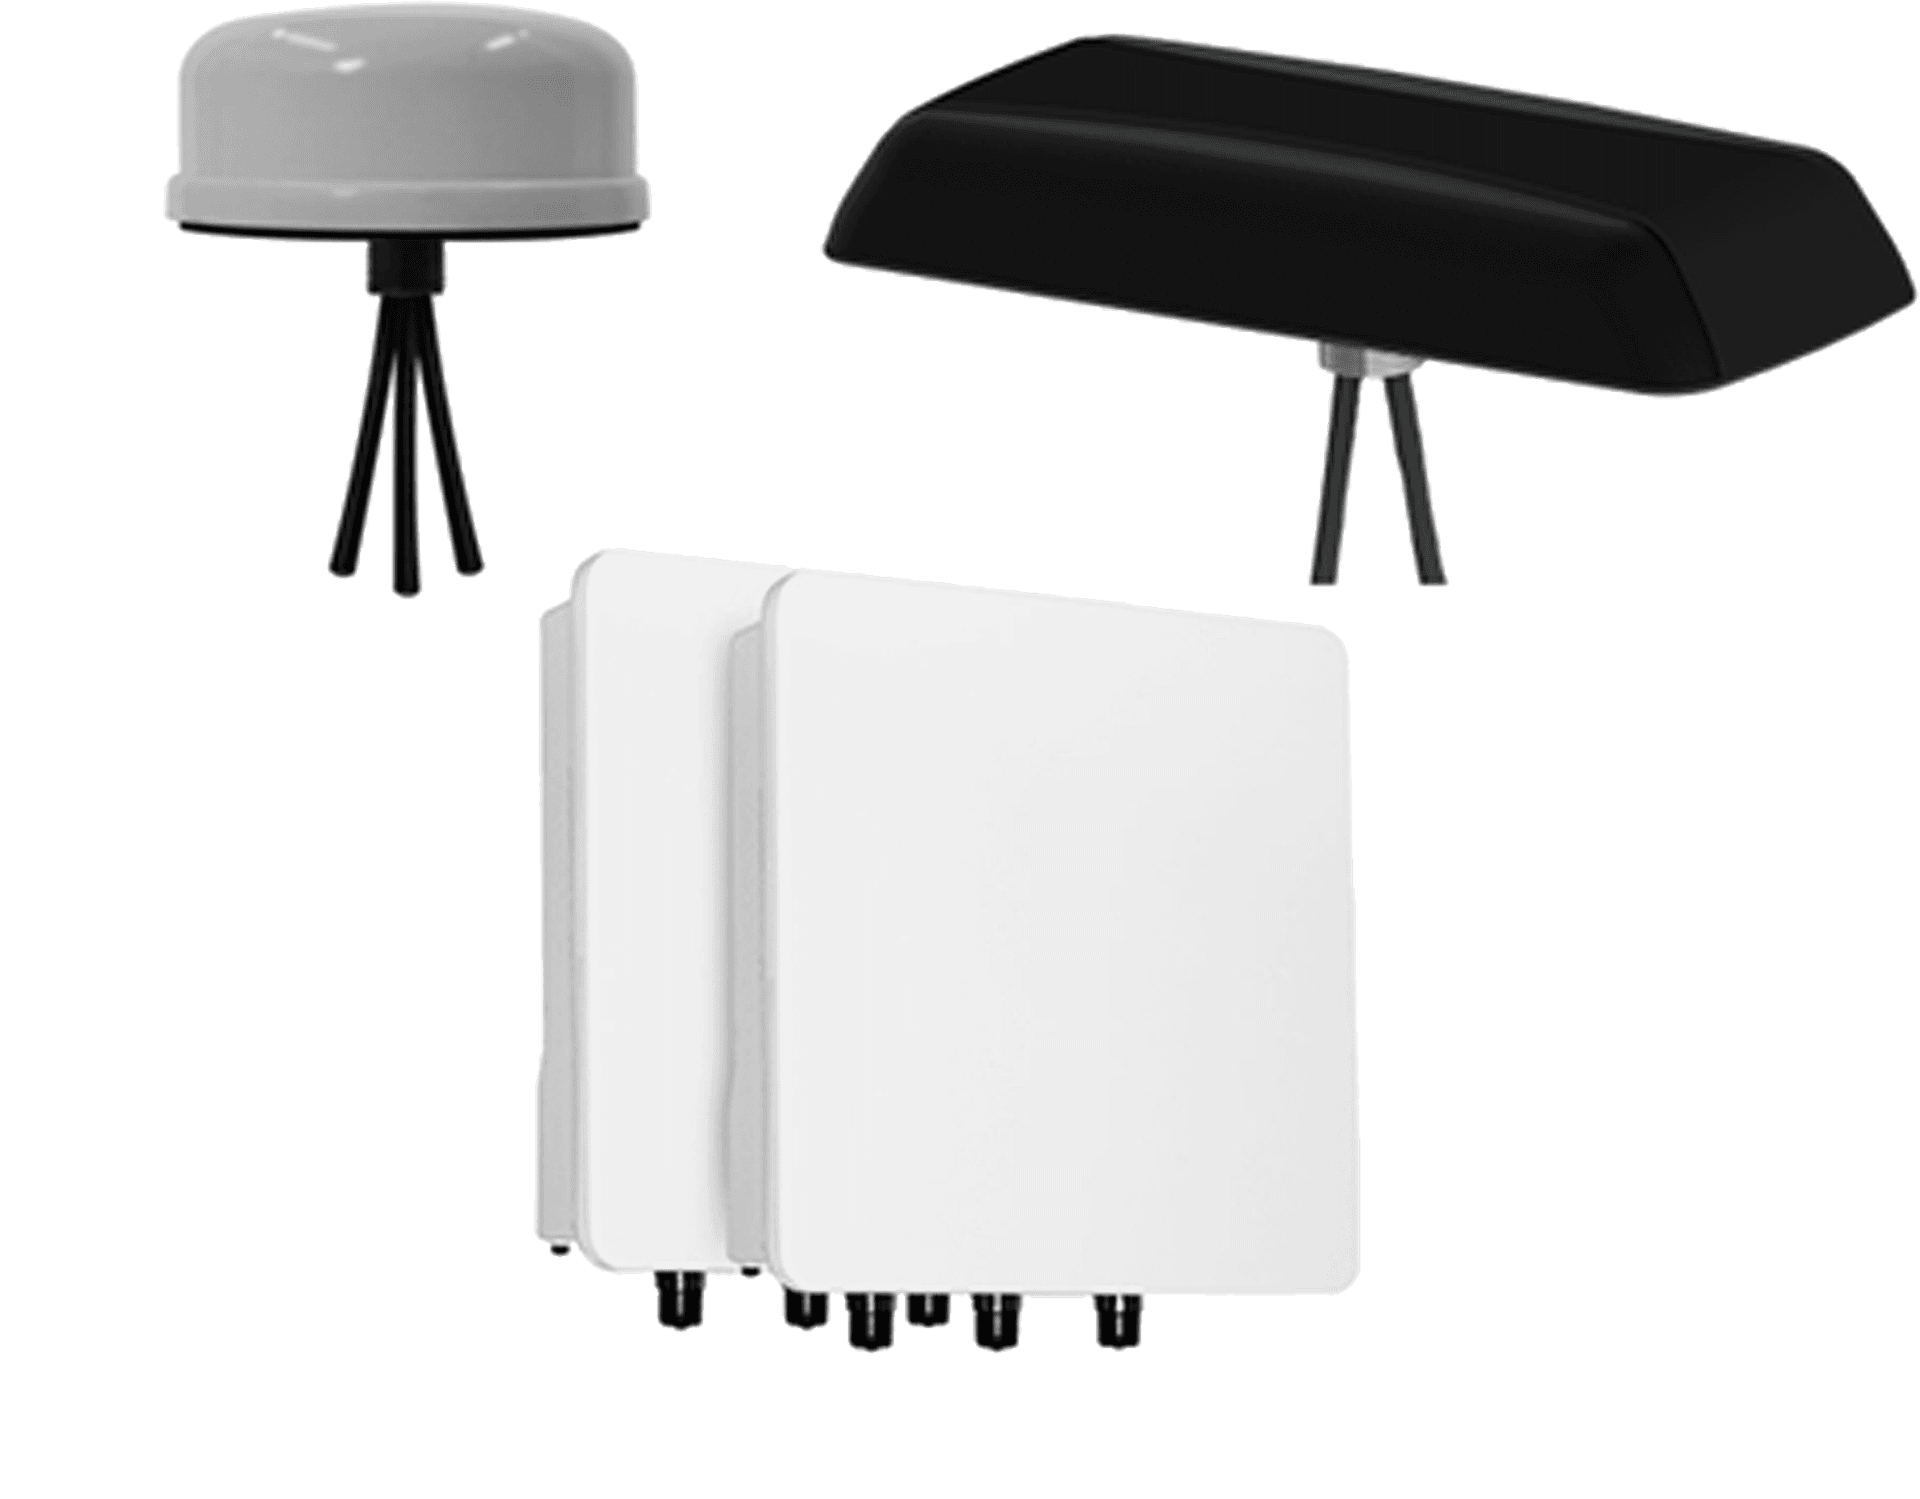 Proxim wireless antennas group